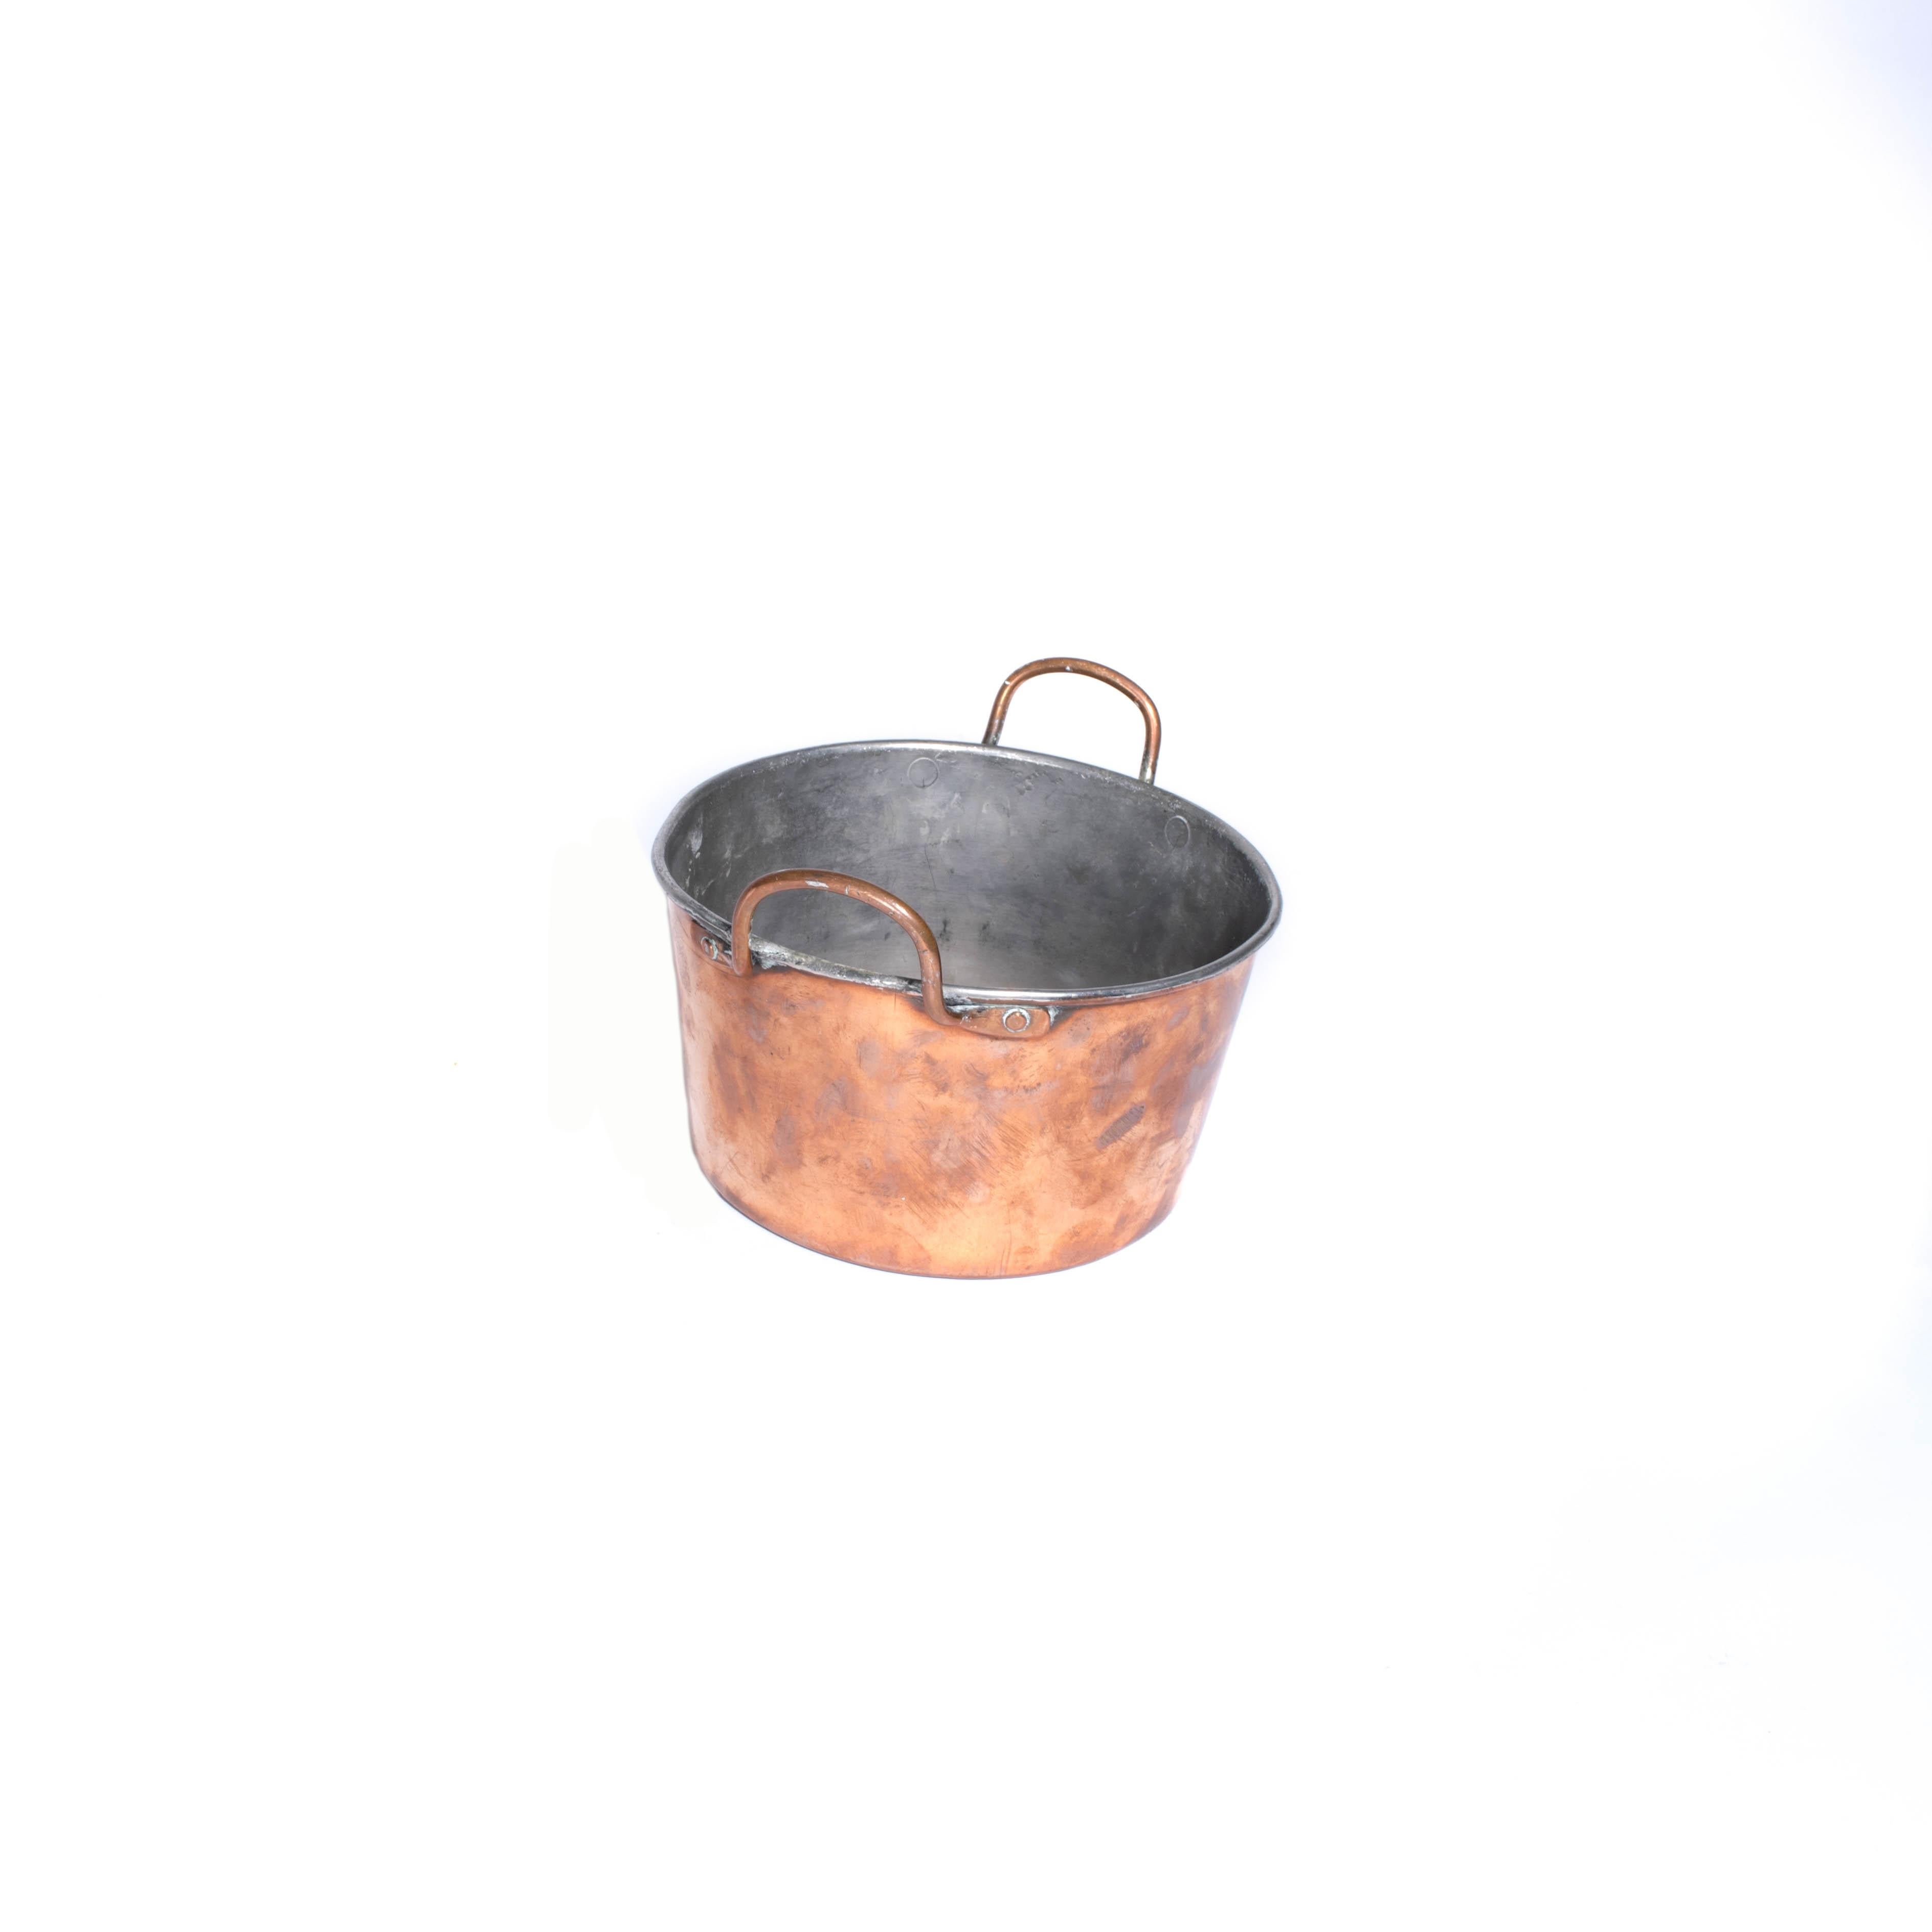 Jugendstil Antique Copper Pot from Sweden, Early 1900s